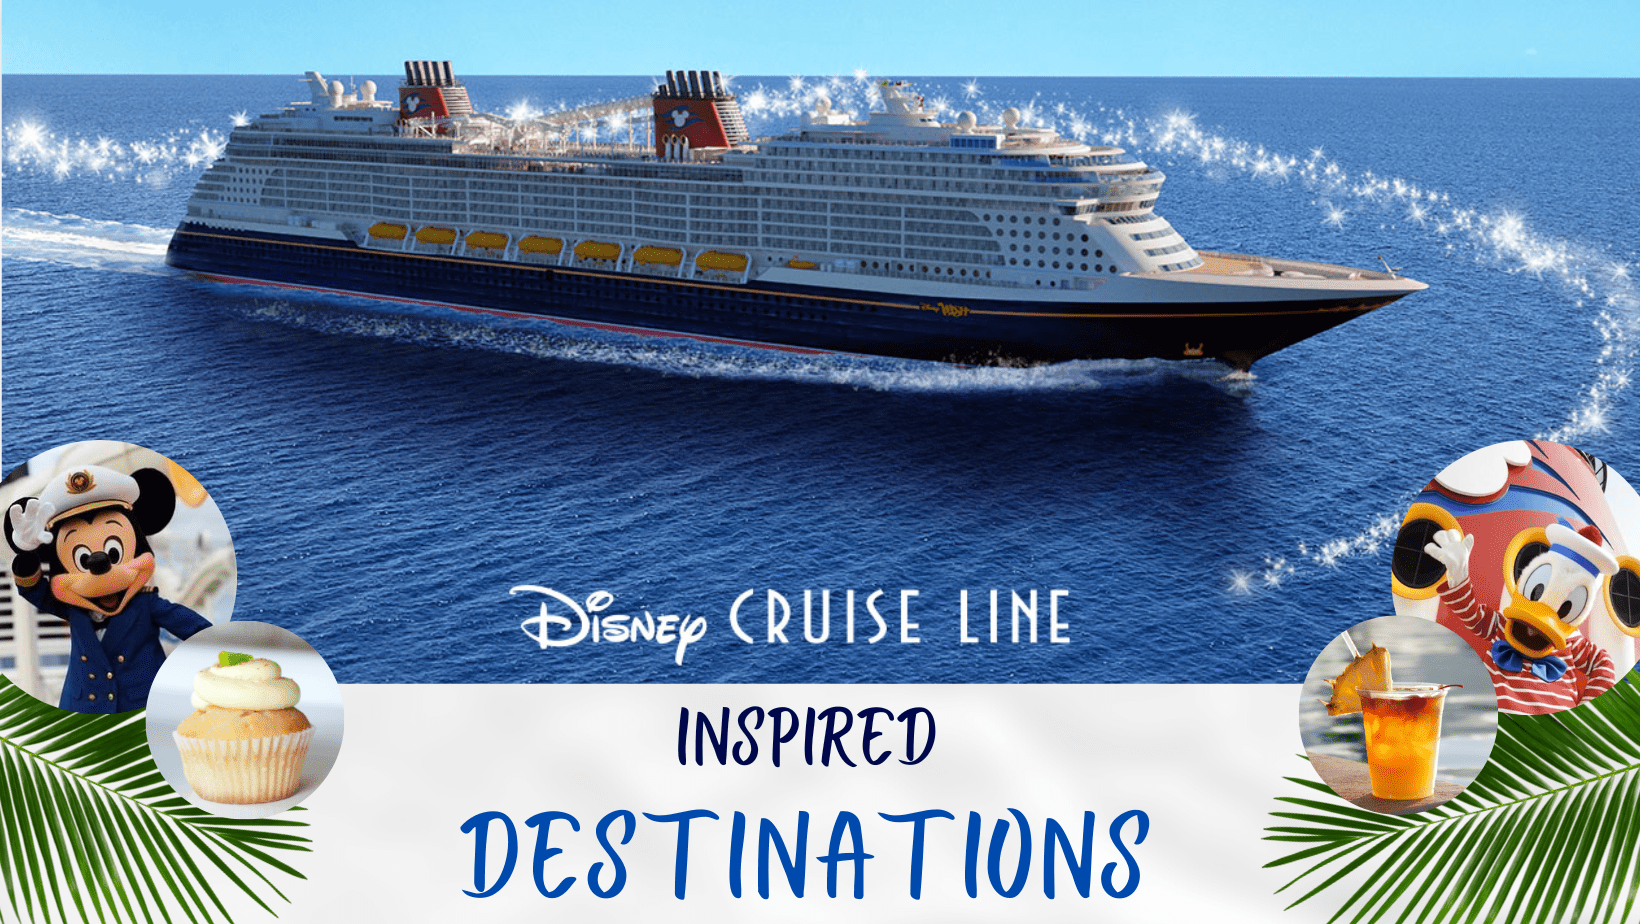 Disney Cruise Dinner Kenner Facebook Cover